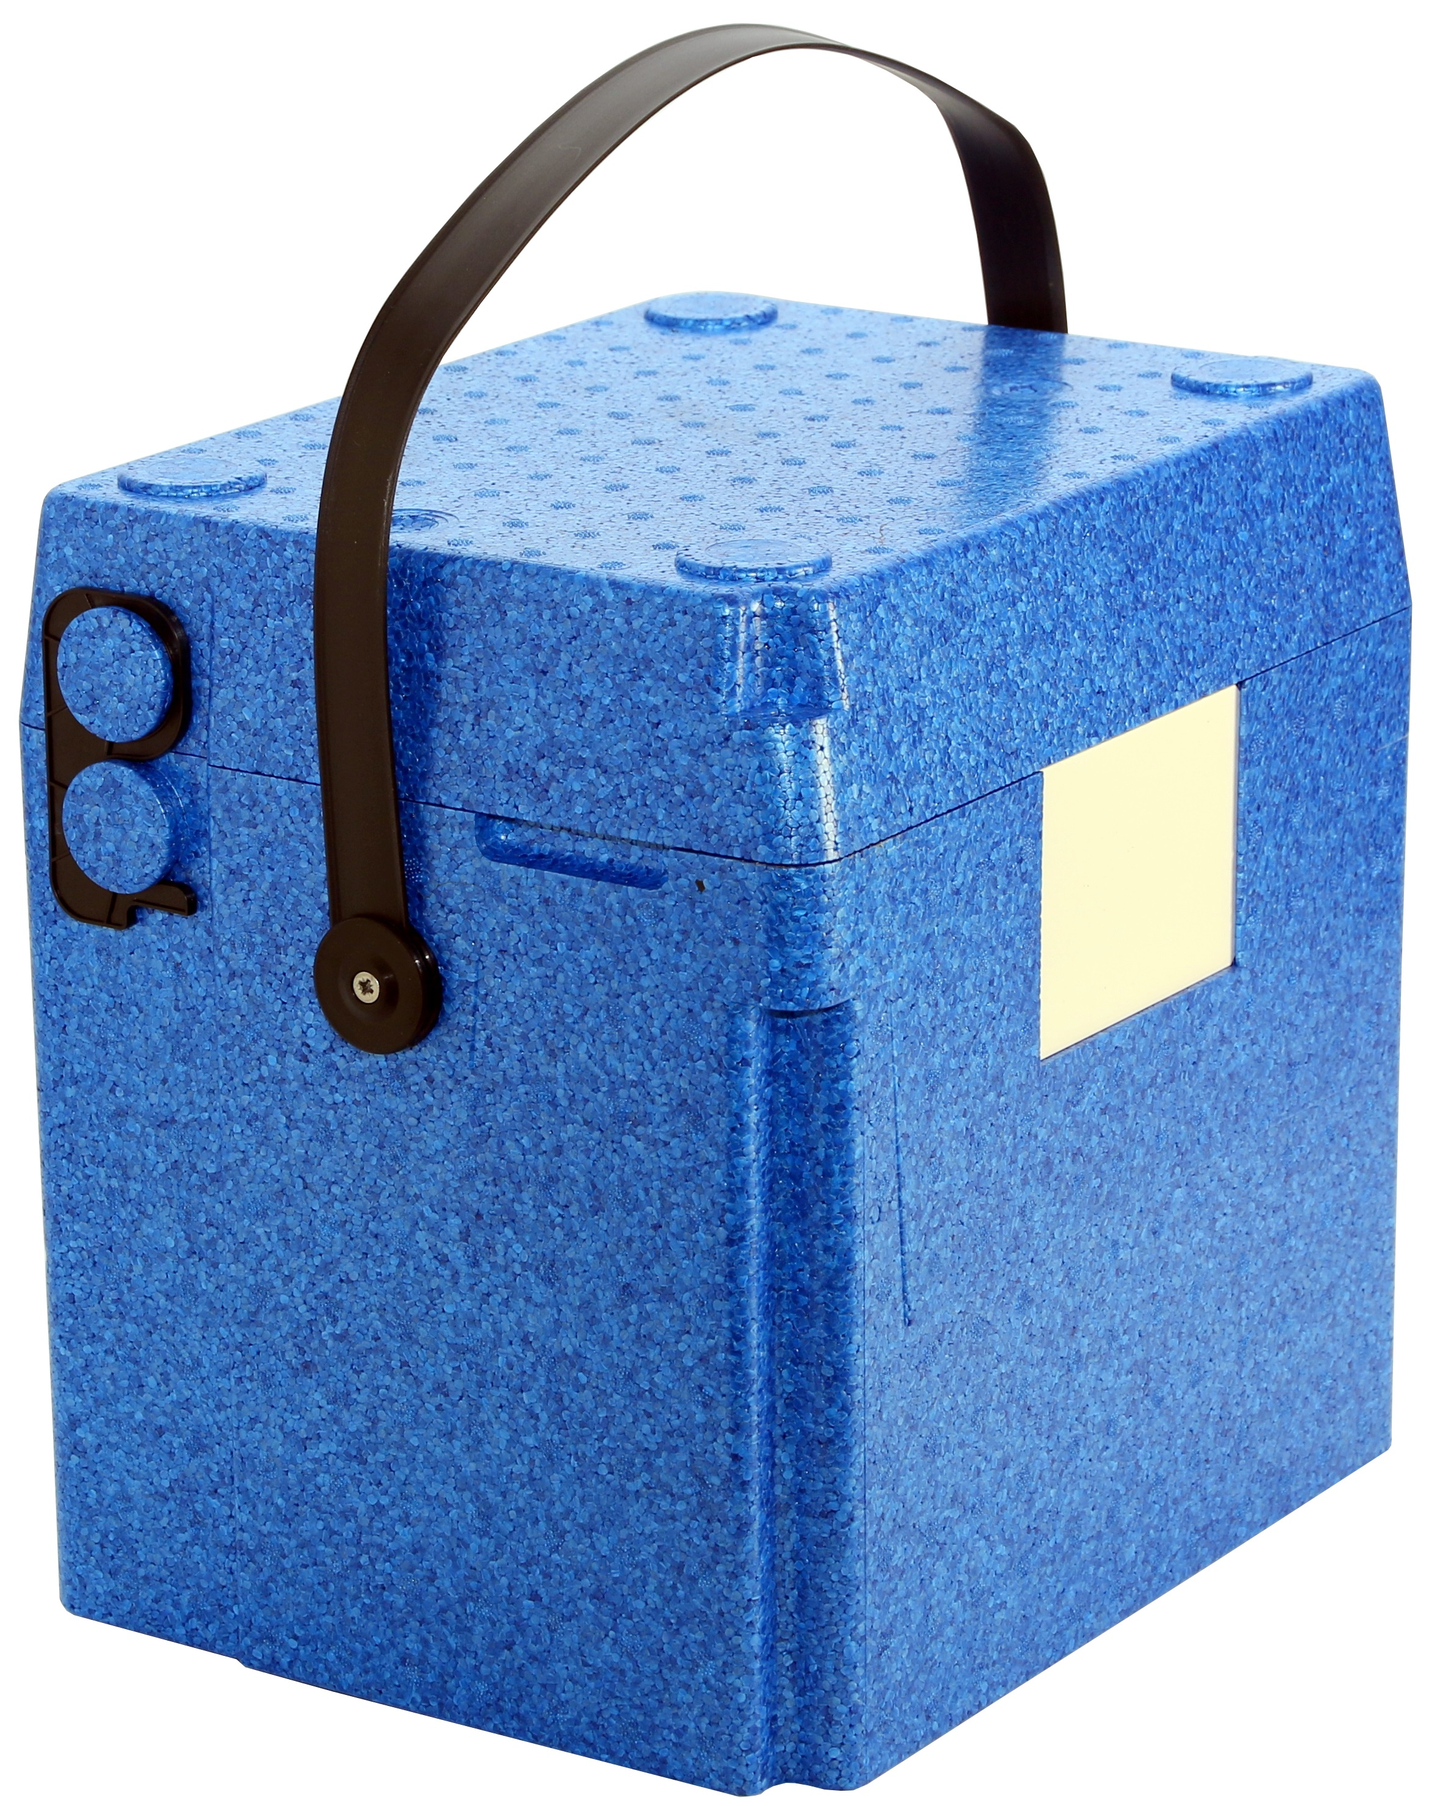 EPP termolaatikko GN 1/4 sininen 15l muovisangalla